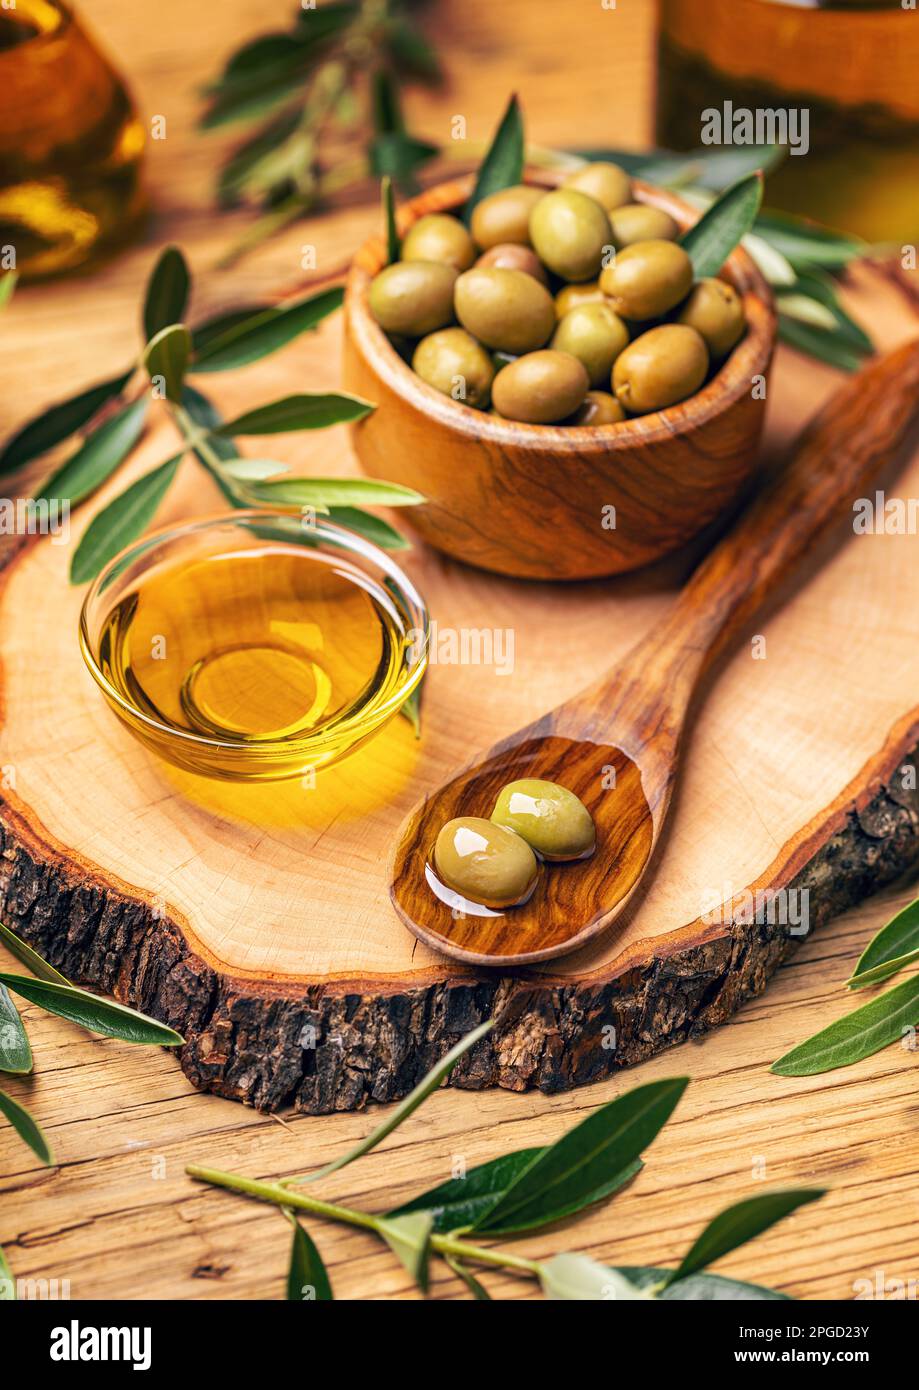 Olives méditerranéennes dans une vieille cuillère de cuisson avec huile d'olive, composition STILL Life Banque D'Images